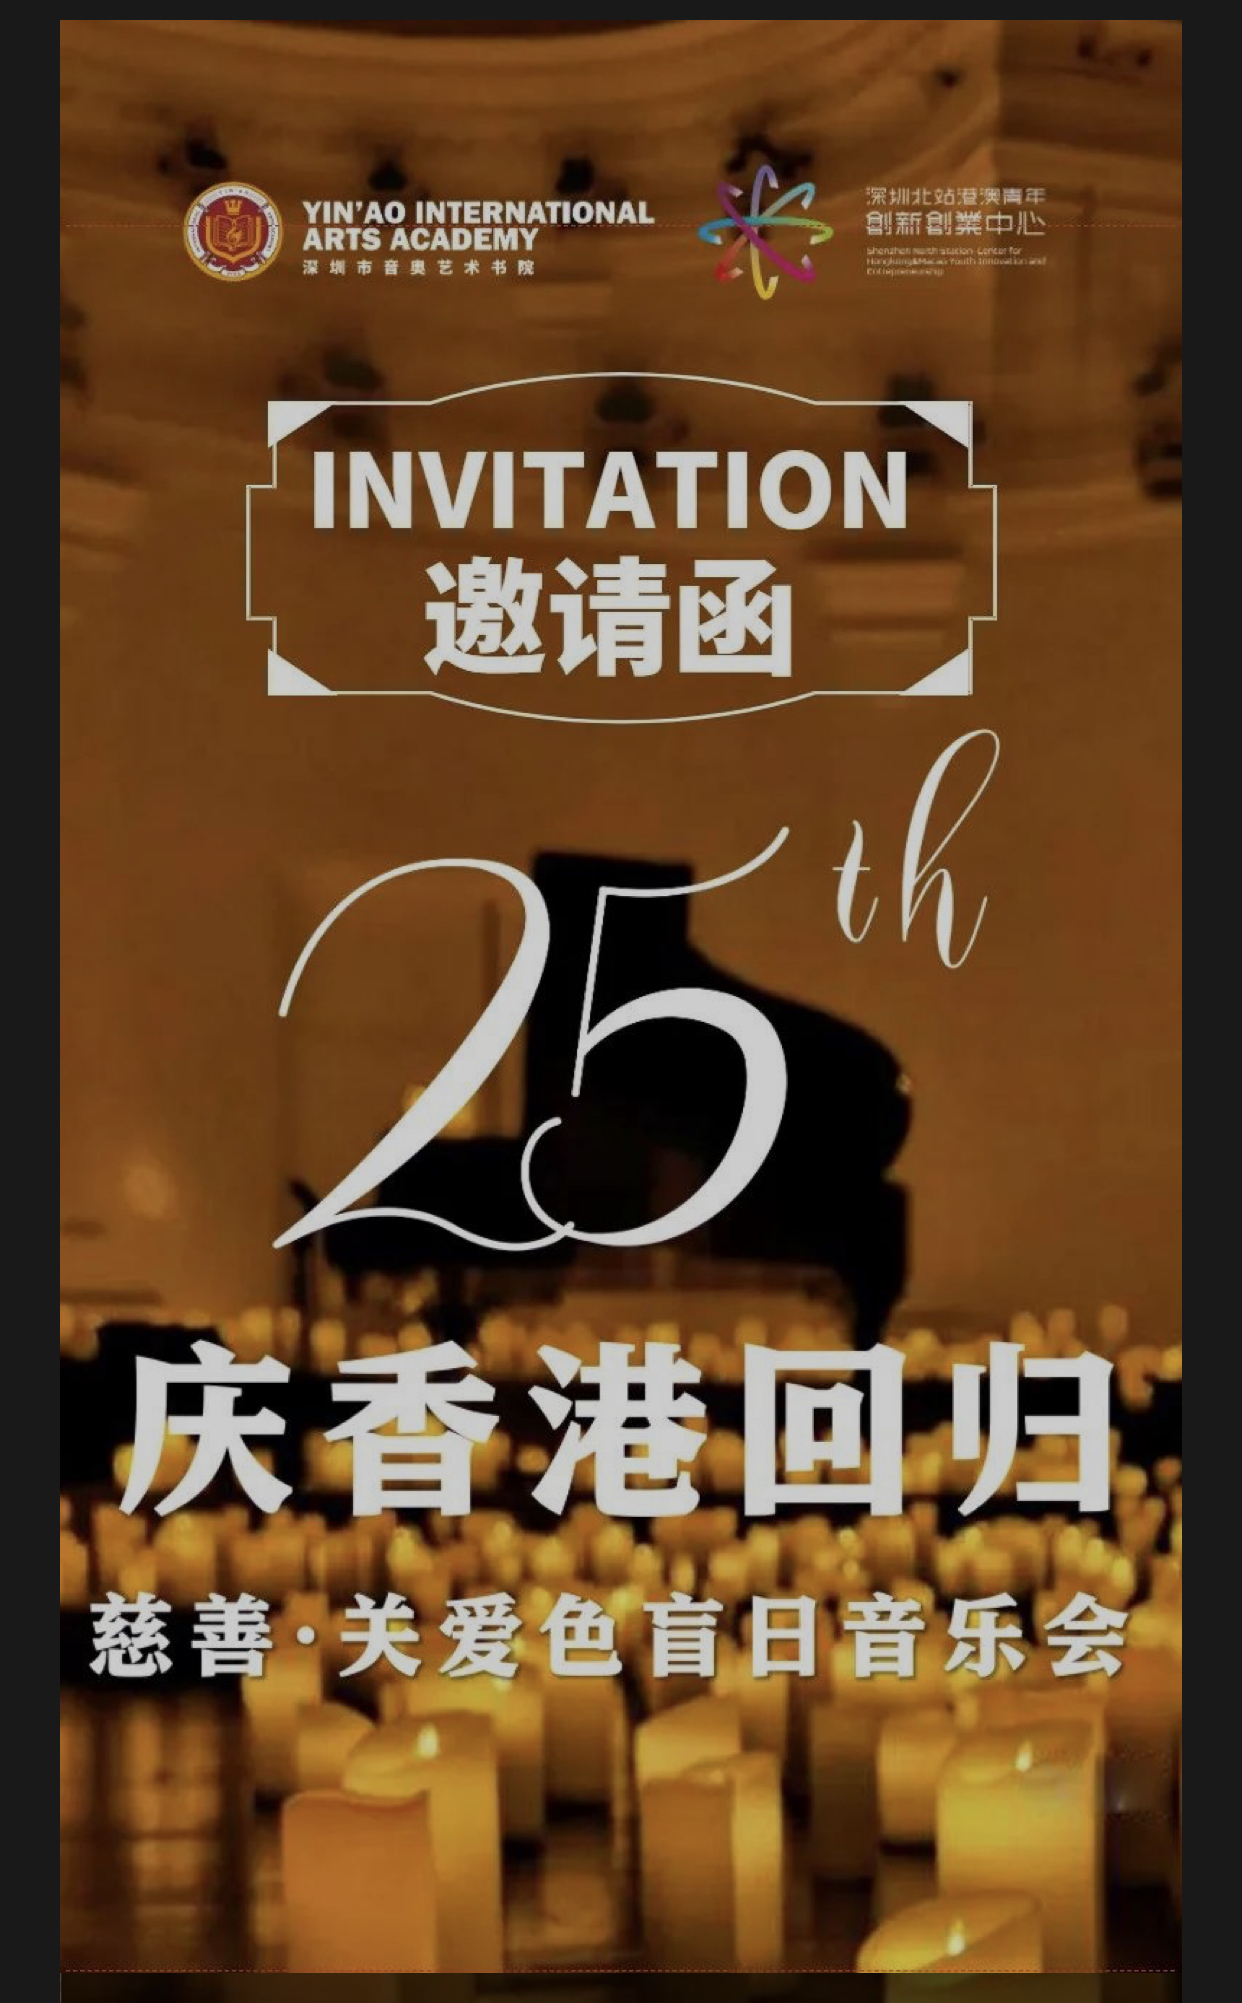 由本會參與承辦的「慶祝香港回歸25週年」慈善音樂會在活動主辦方深圳北站港澳青年創新創業中心12樓隆重舉行